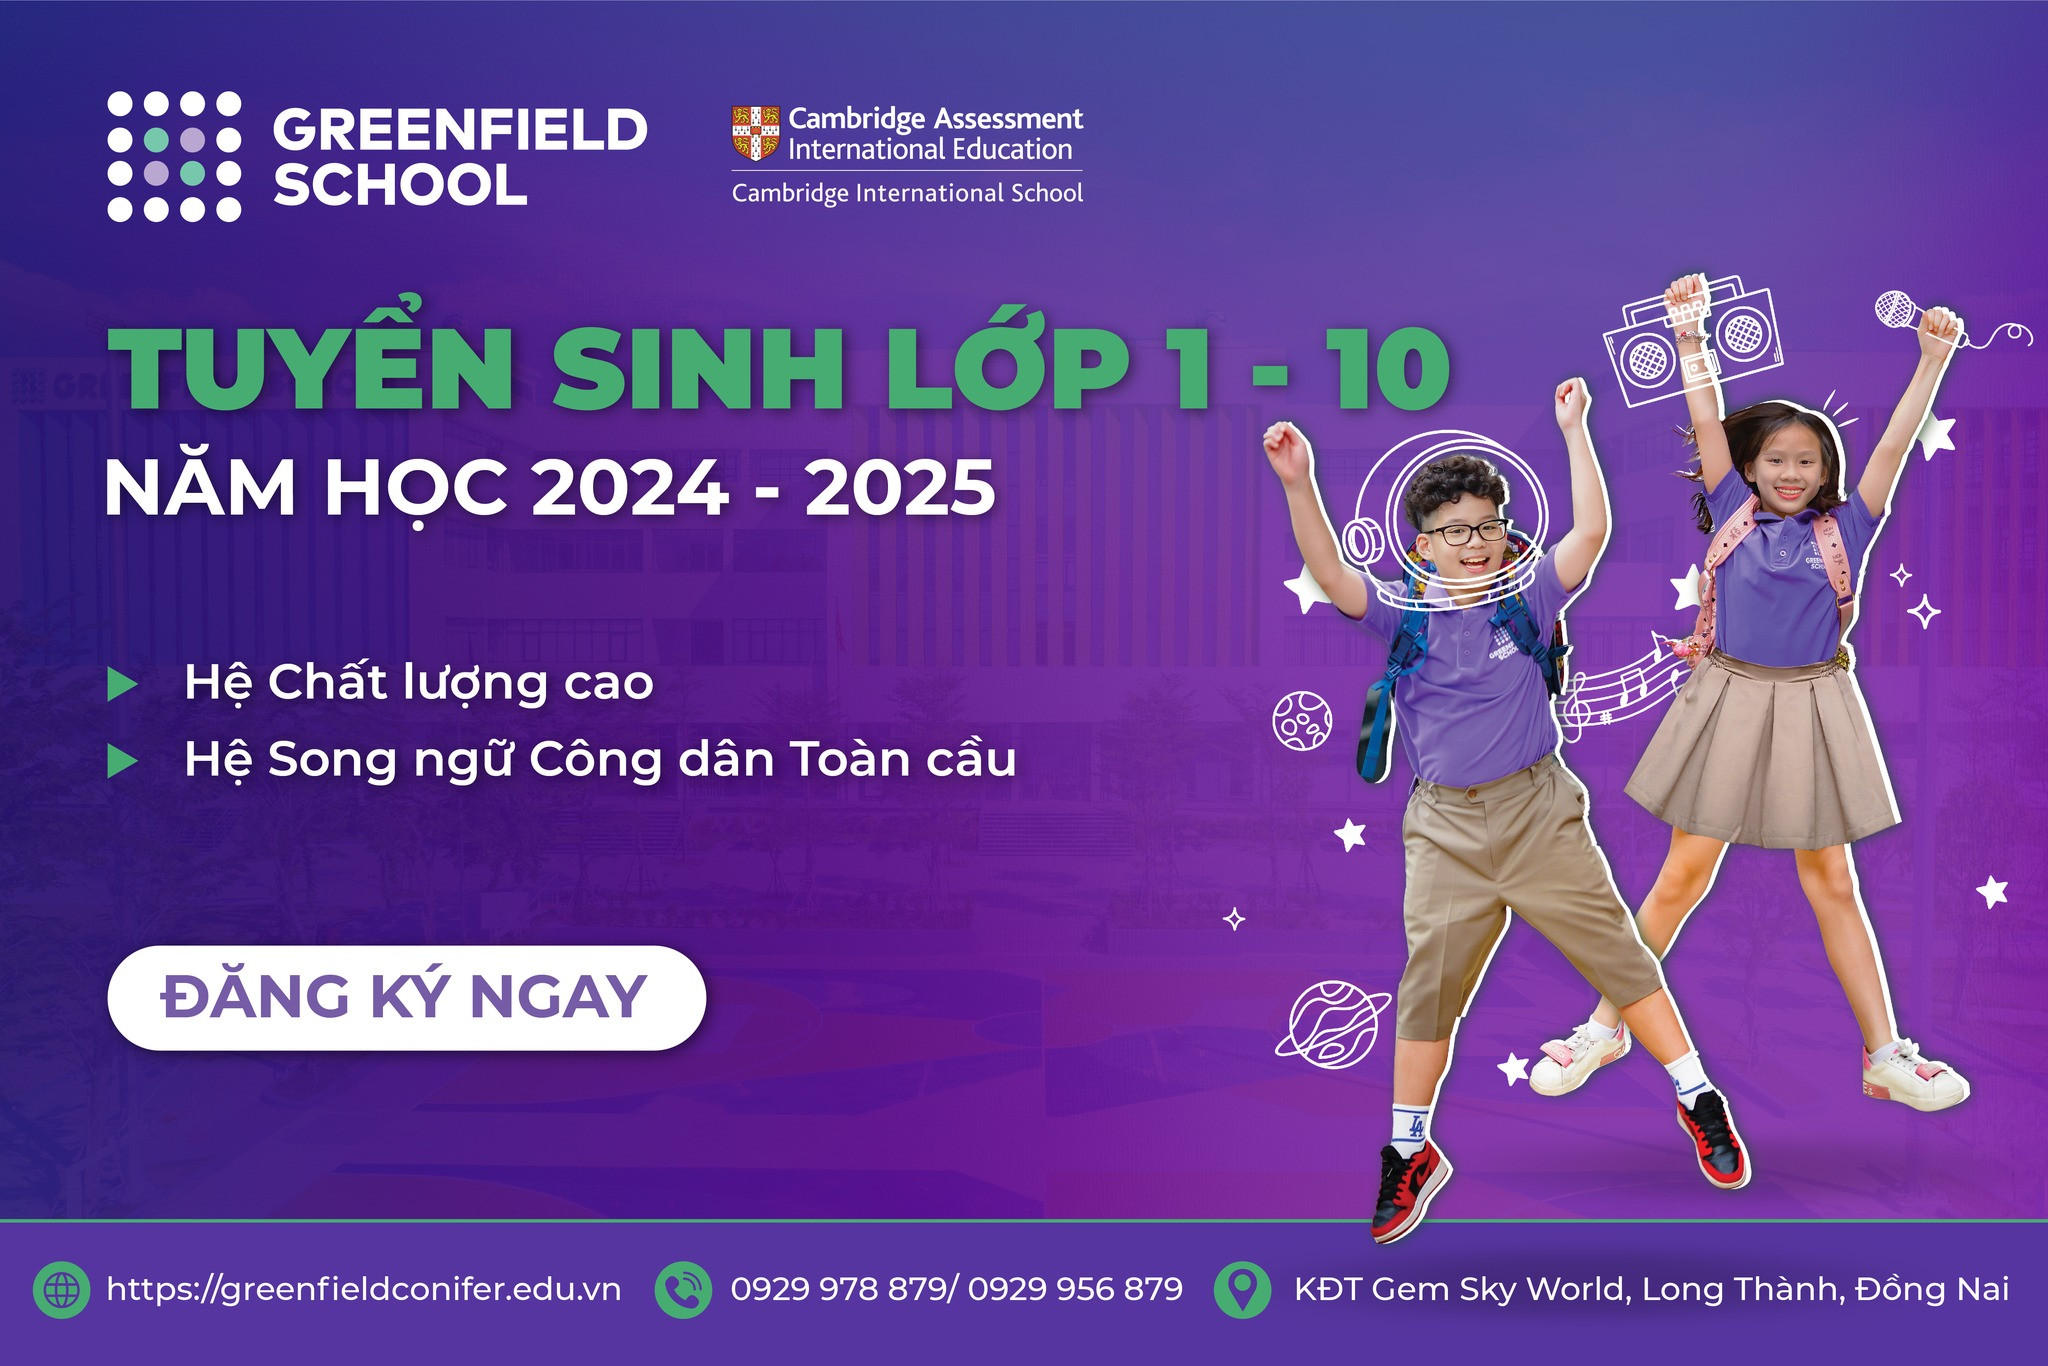 GREENFIELD SCHOOL THÔNG BÁO TUYỂN SINH NĂM HỌC 2024 - 2025
